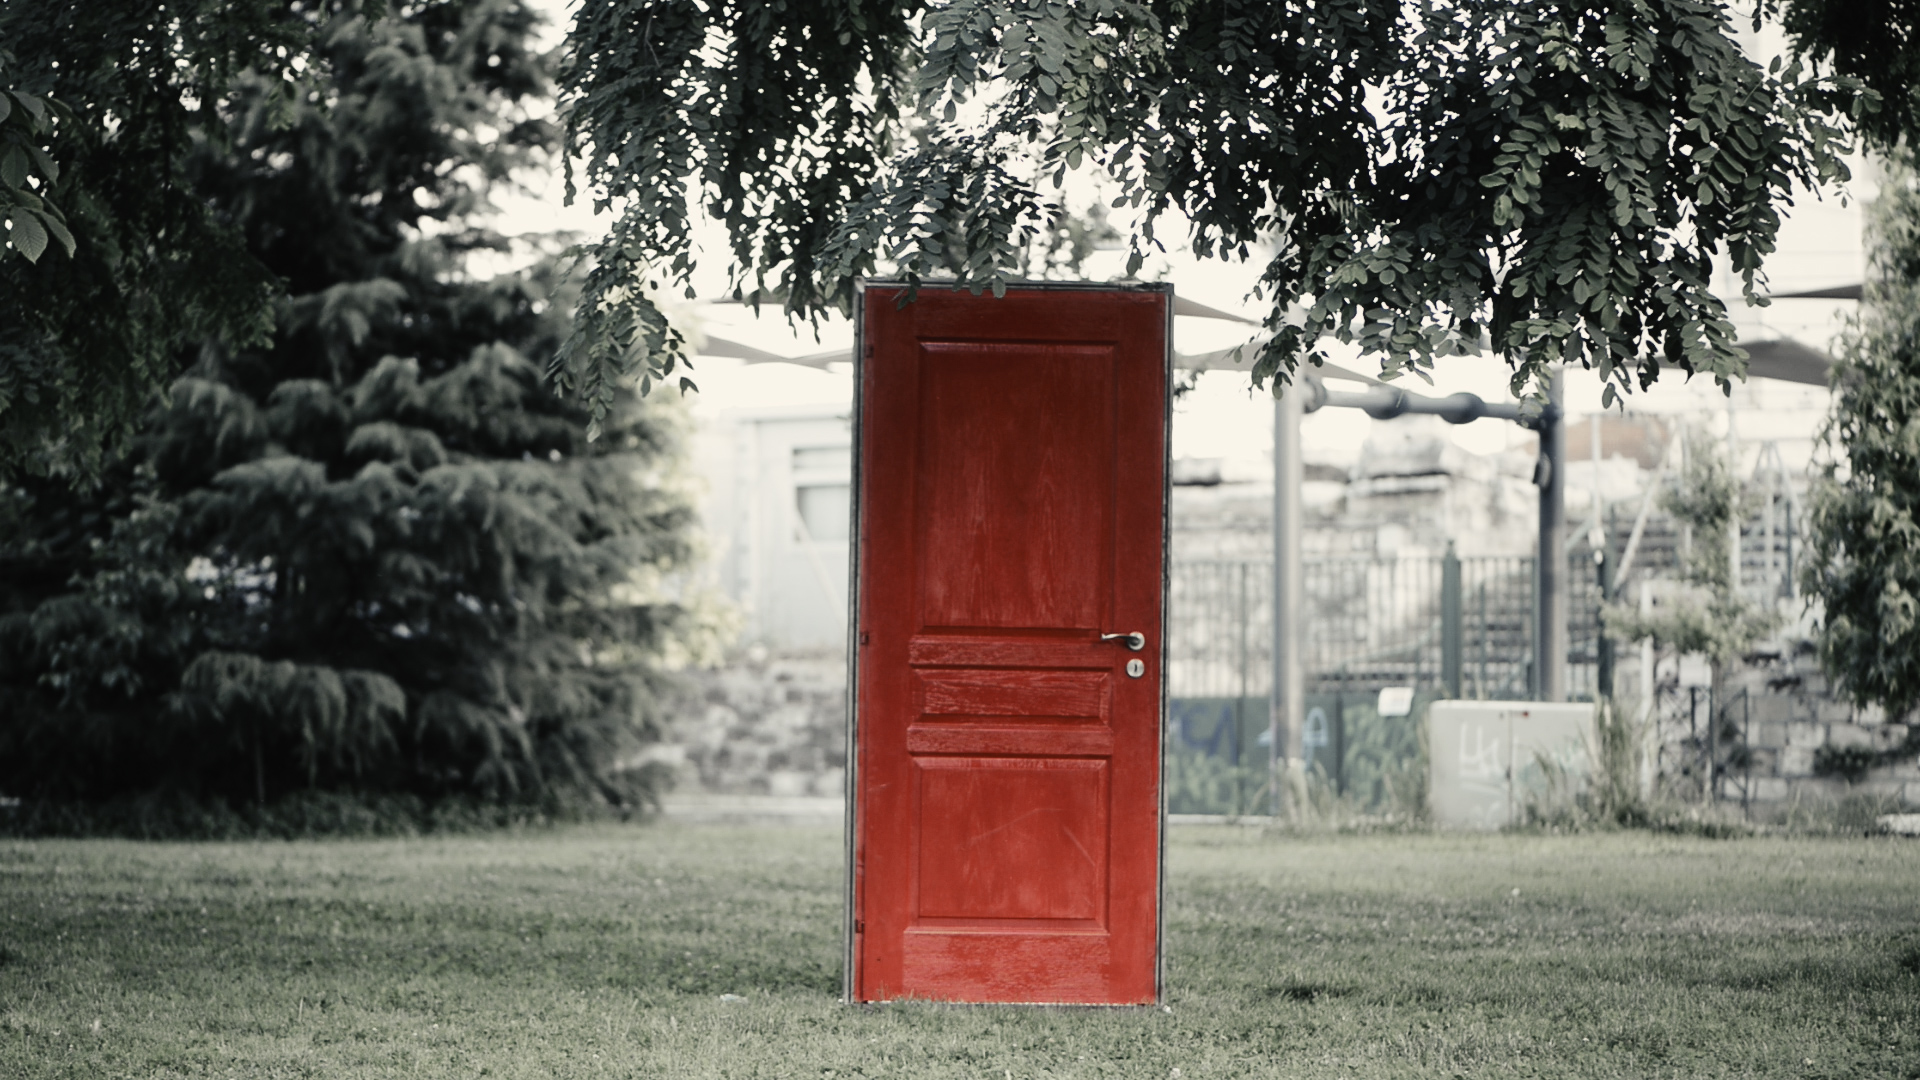 Αφίσα της ταινίας ΕΚΤΟΣ: Μία κατακόκκινη ξύλινη πόρτα στέκεται με το πλαίσιο της μόνο στo κέντρο ενός δημόσιου κήπου με χορτάρι και φυλλώδη δέντρα.